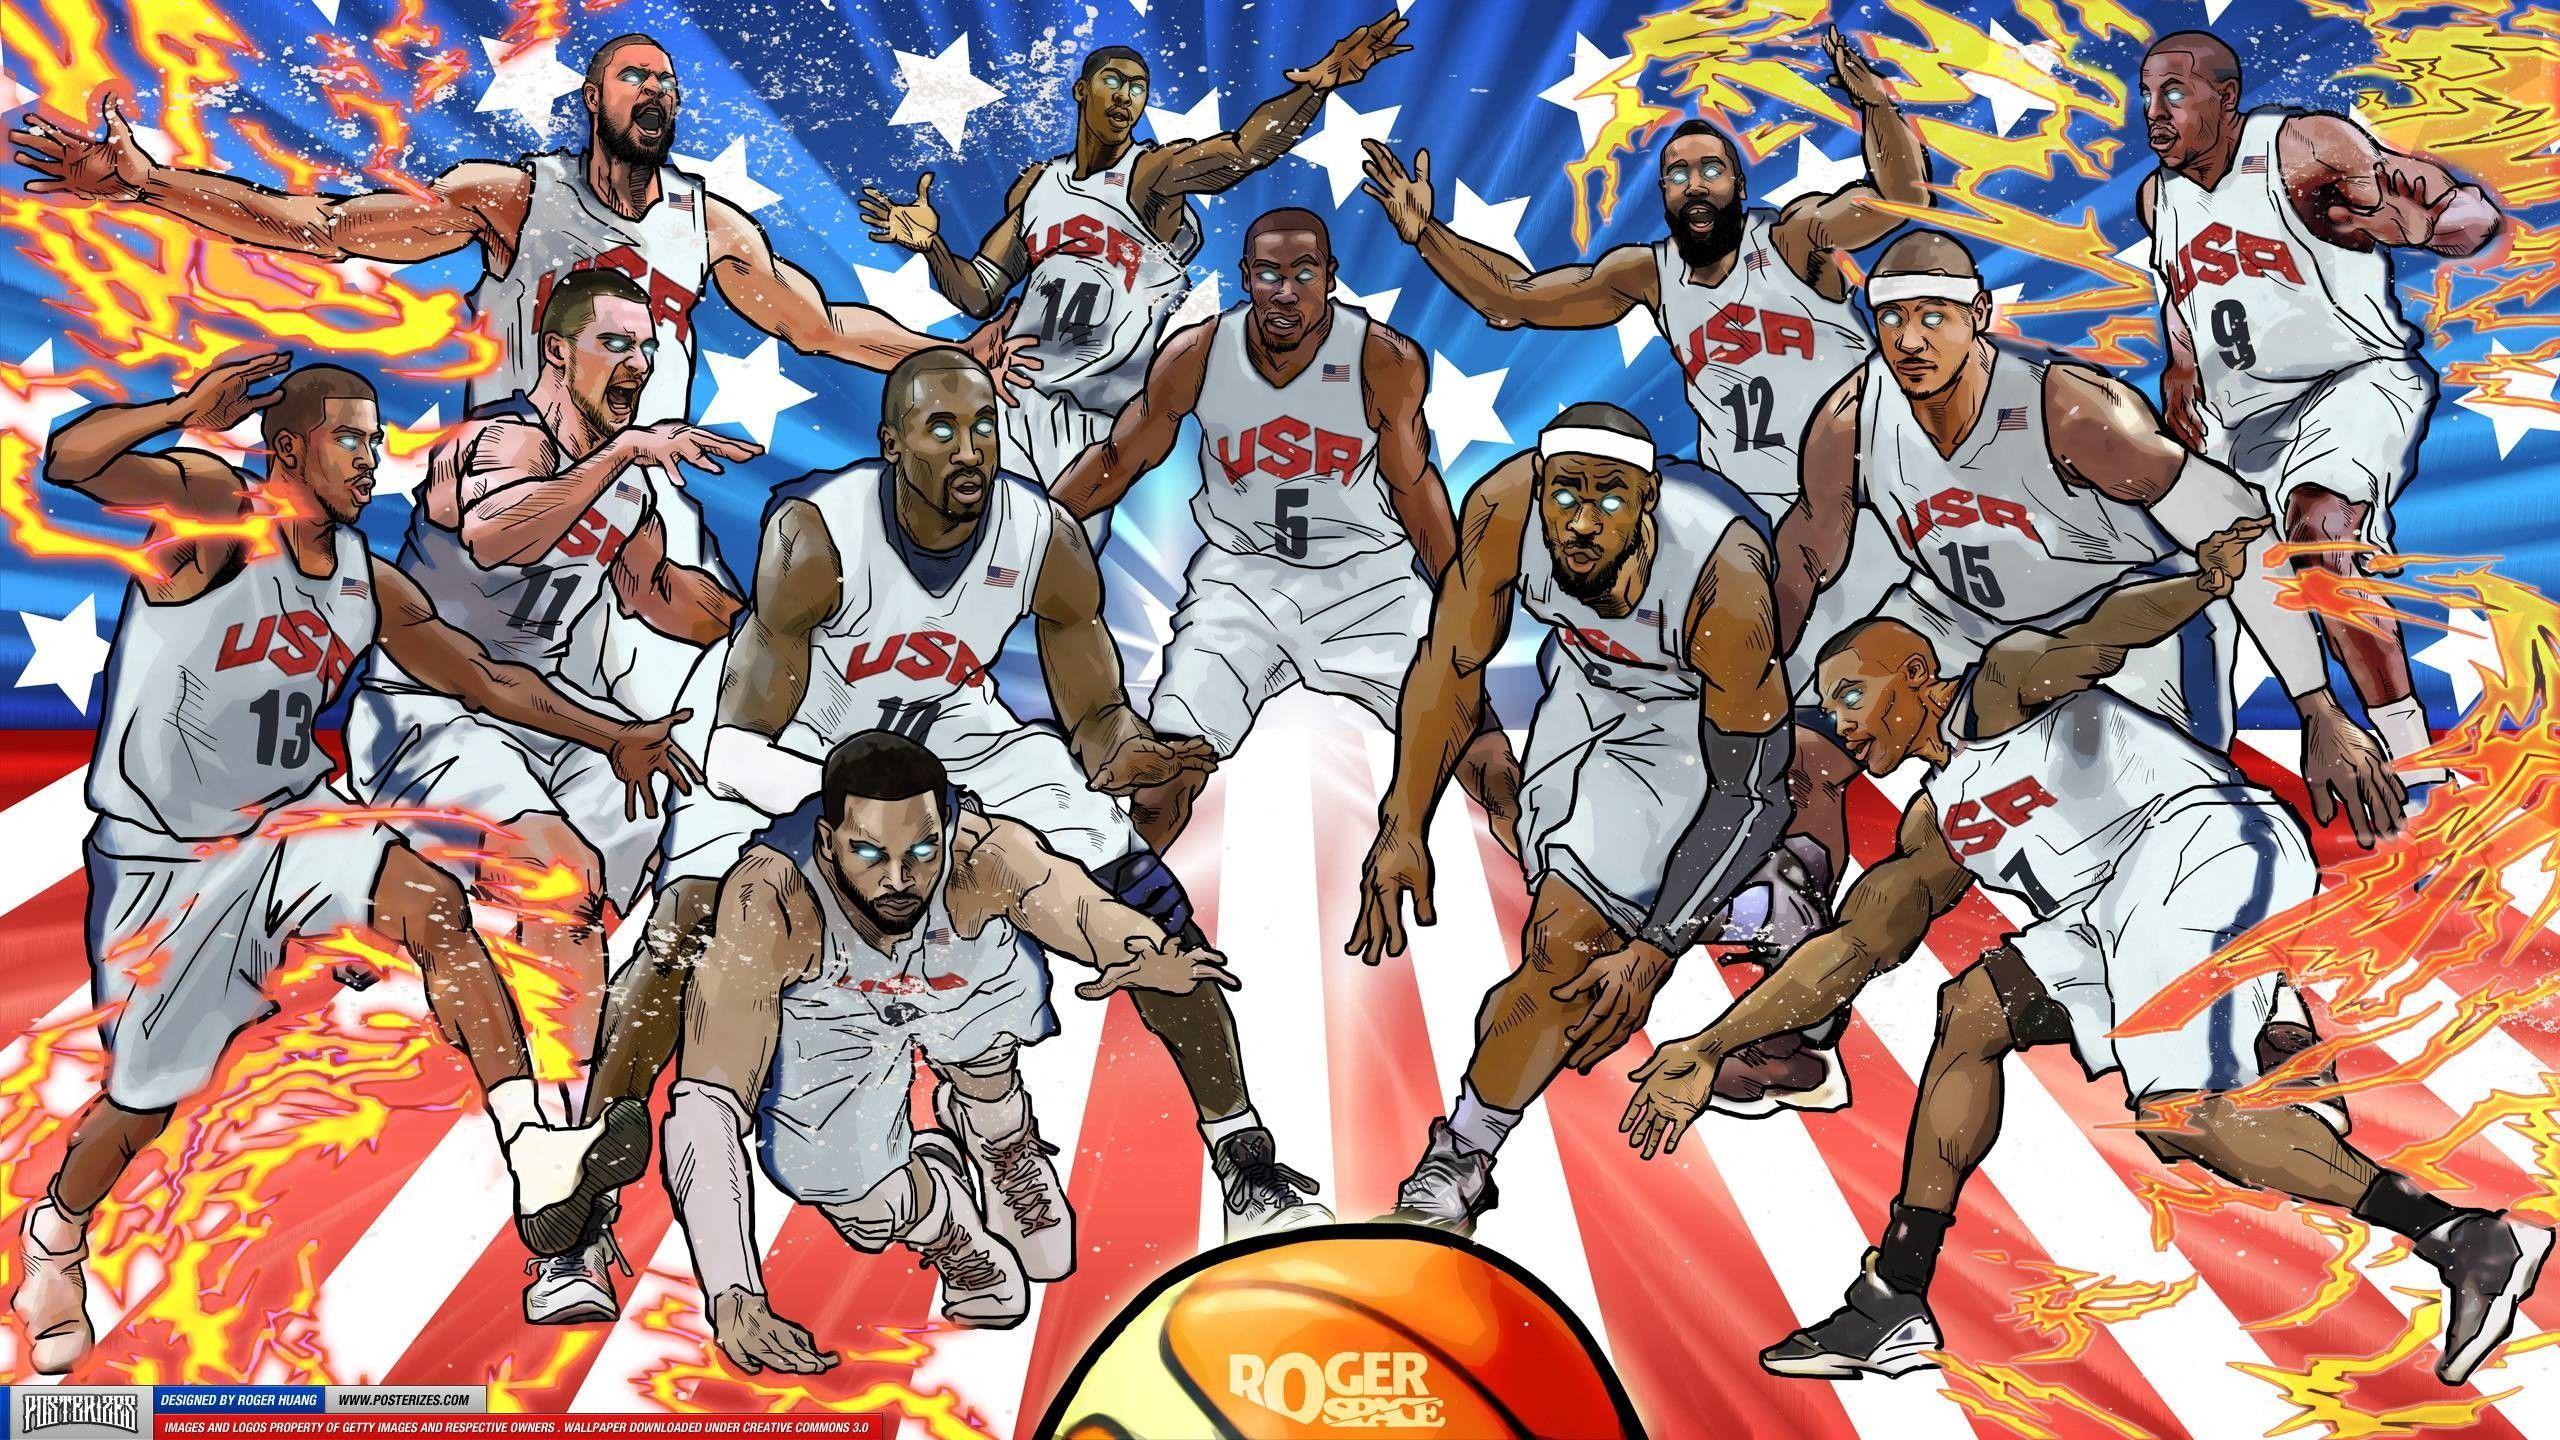 USA Basketball Wallpapers Top Free USA Basketball Backgrounds